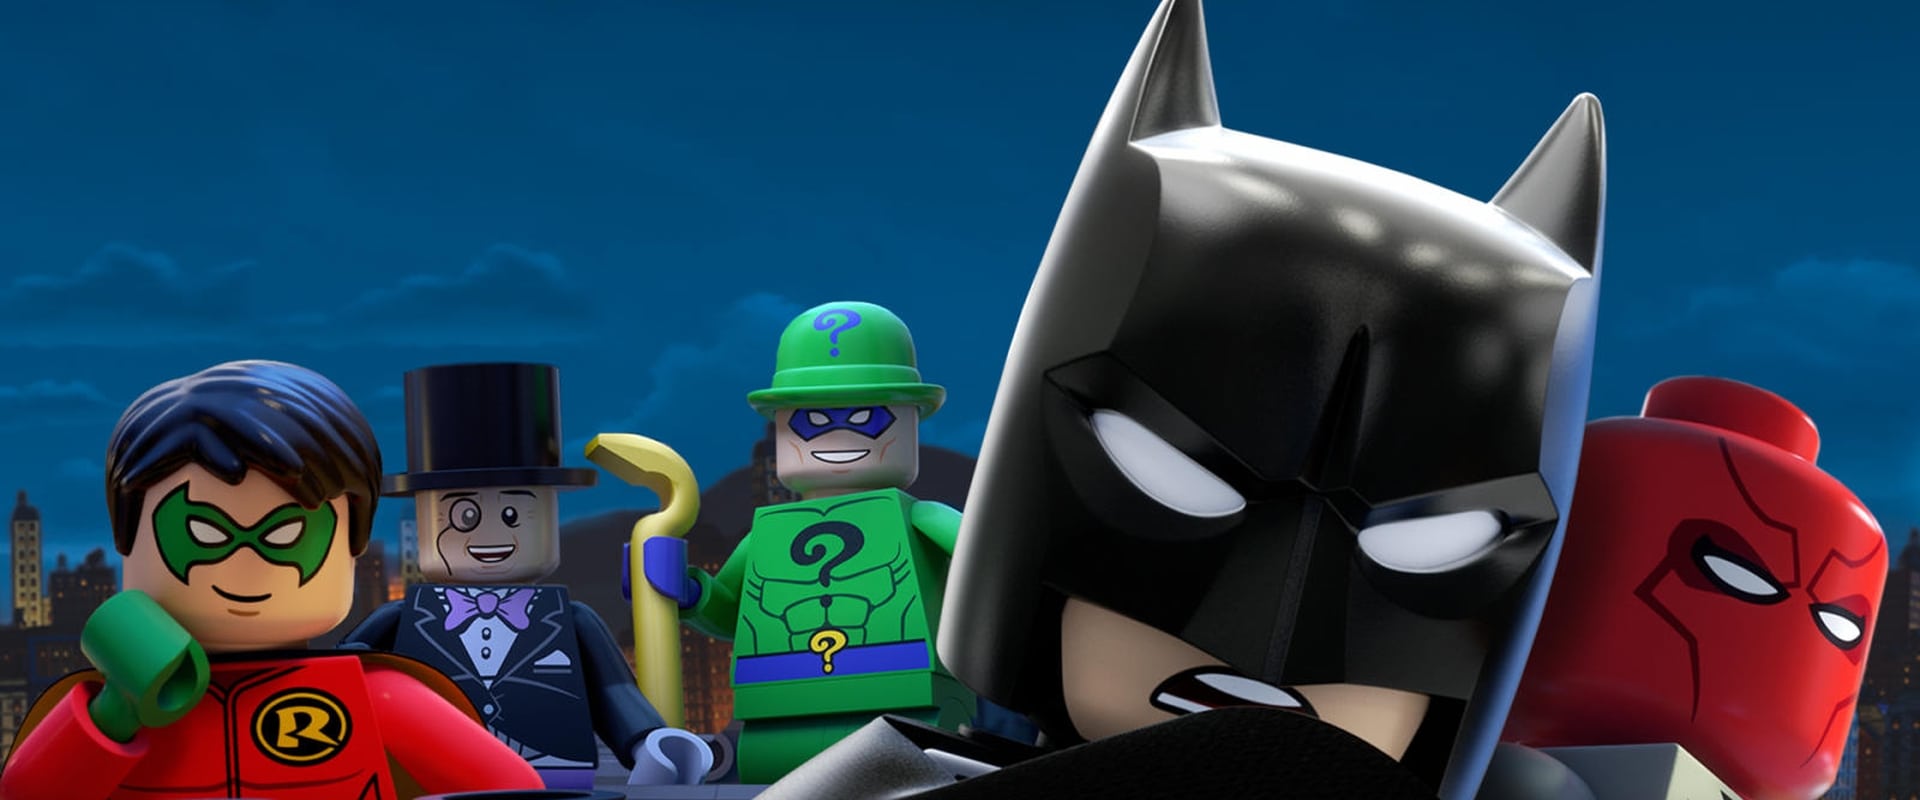 LEGO Batman - Assuntos de Família